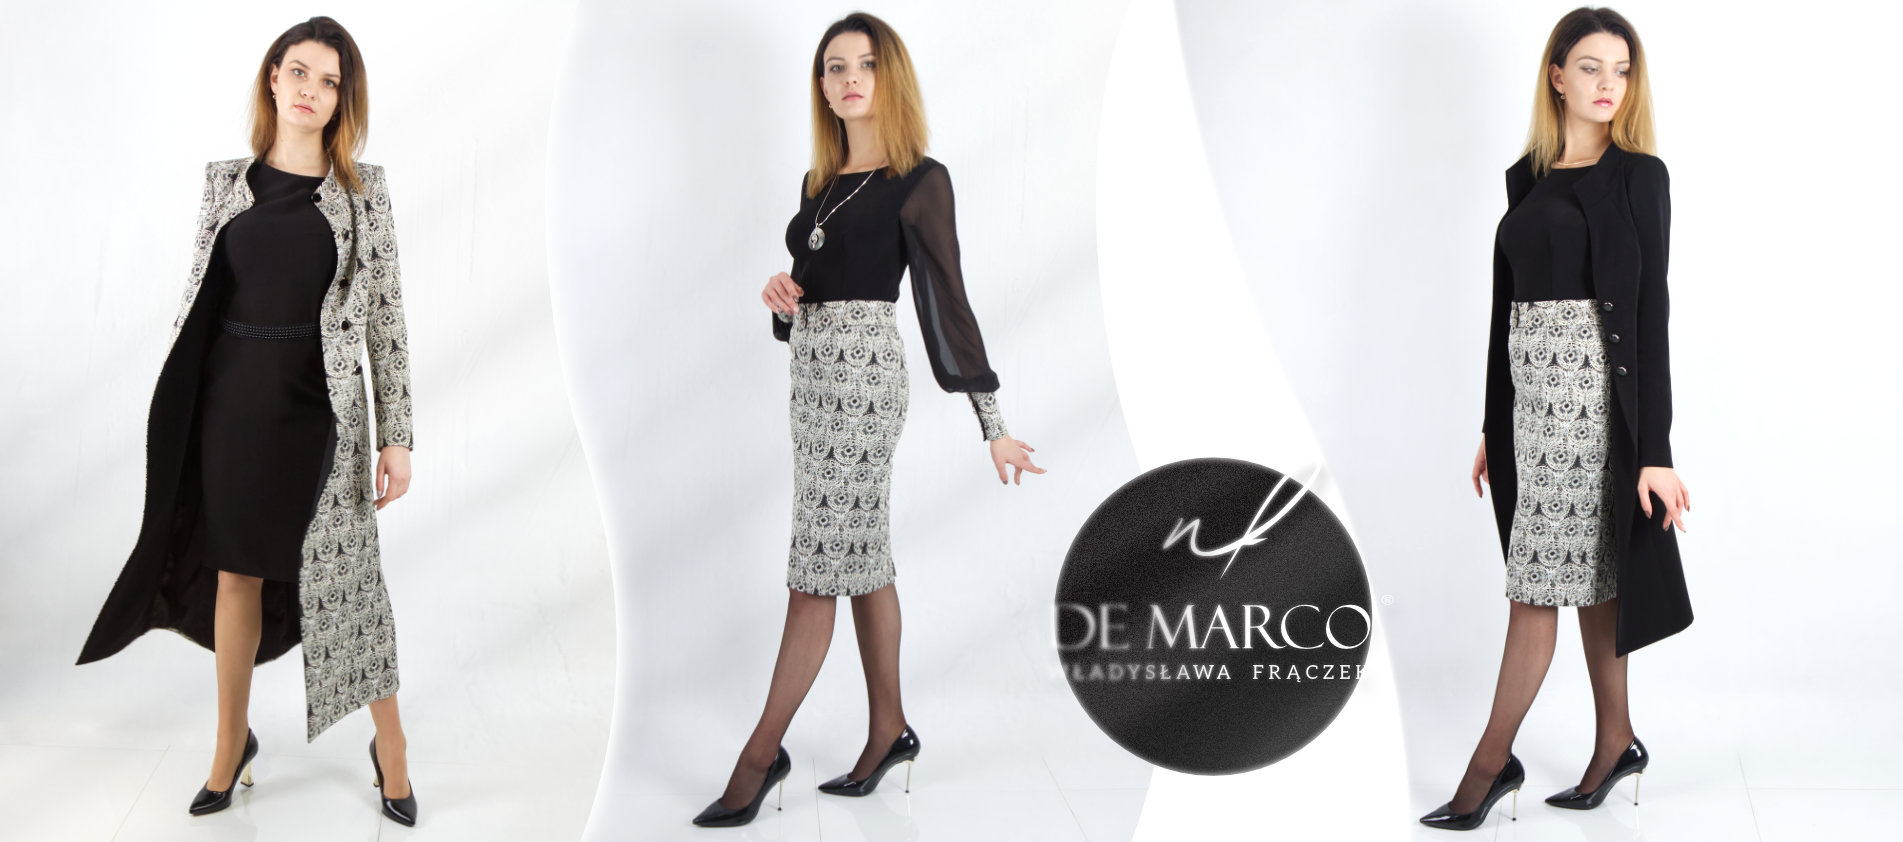  Ekskluzywne marki odzieżowe damskie polskie stylizacje od projektanta z De Marco